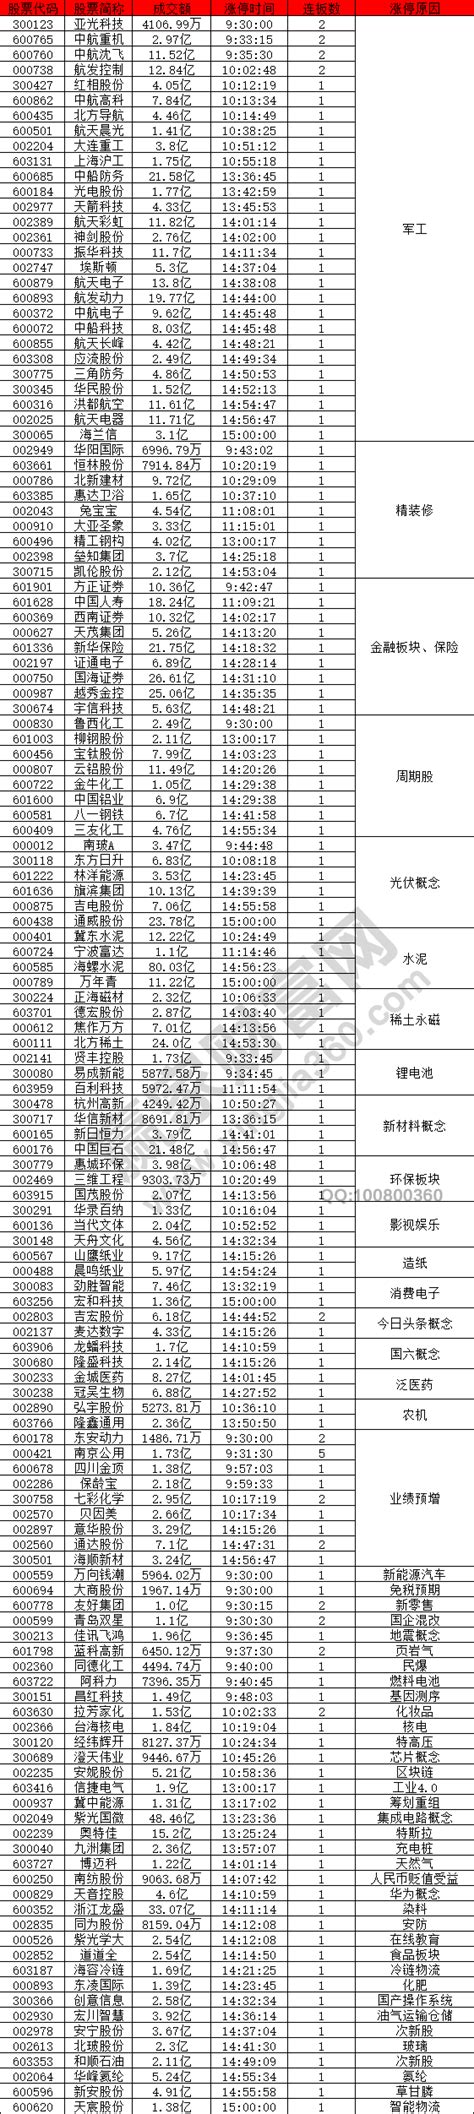 2019年07月24涨停揭秘:军工股强势__赢家财富网